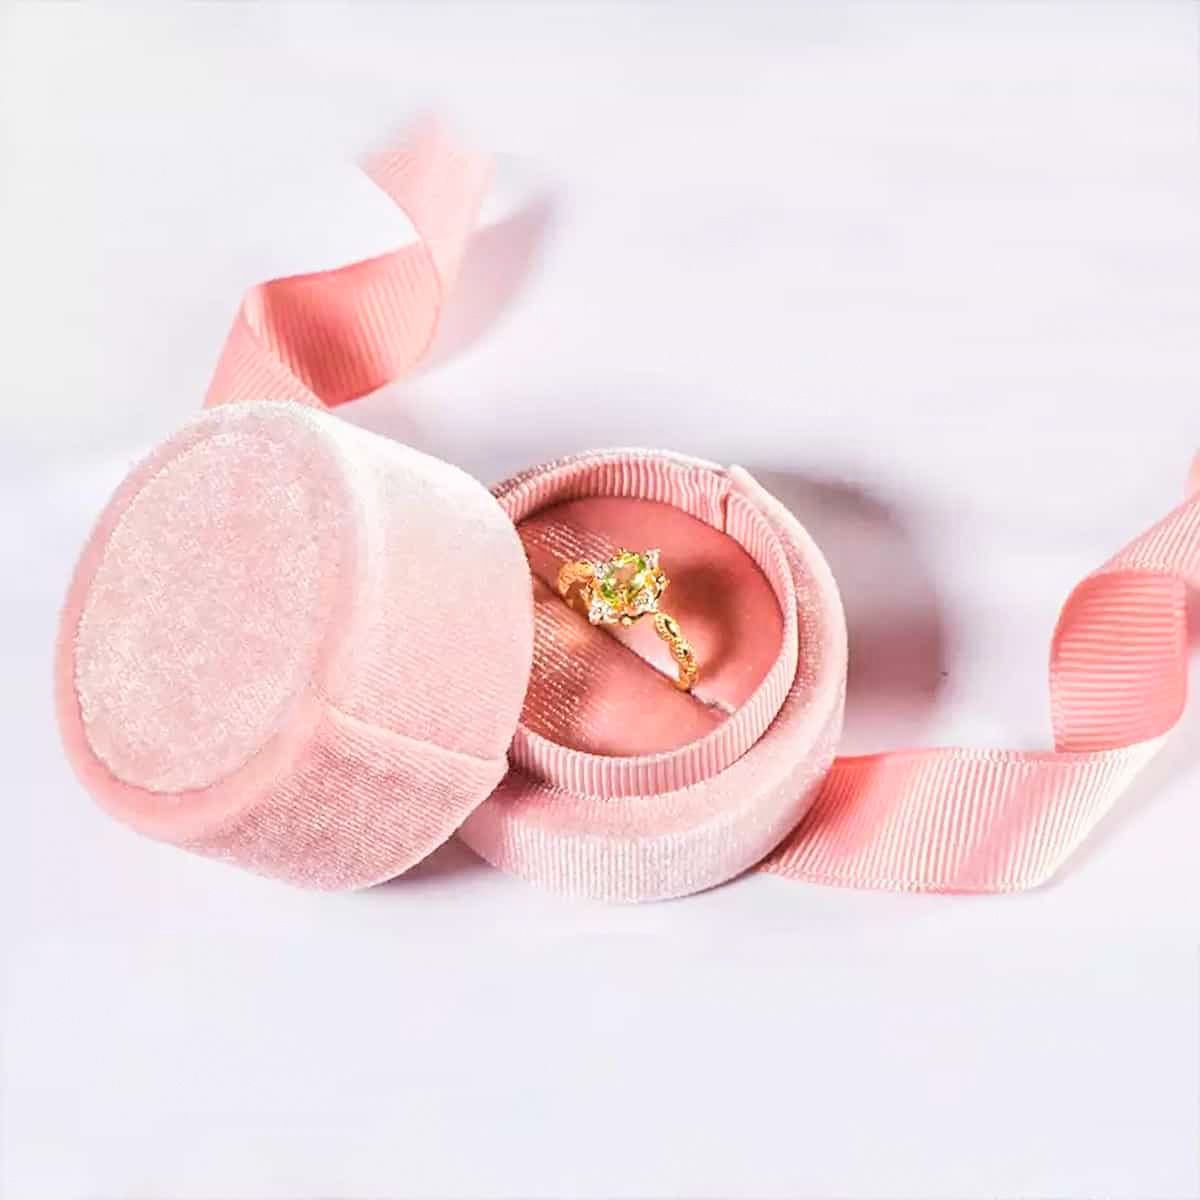 Xưởng in và cung cấp hộp giấy đựng nhẫn cưới đẹp giá rẻ tại Hà Nội